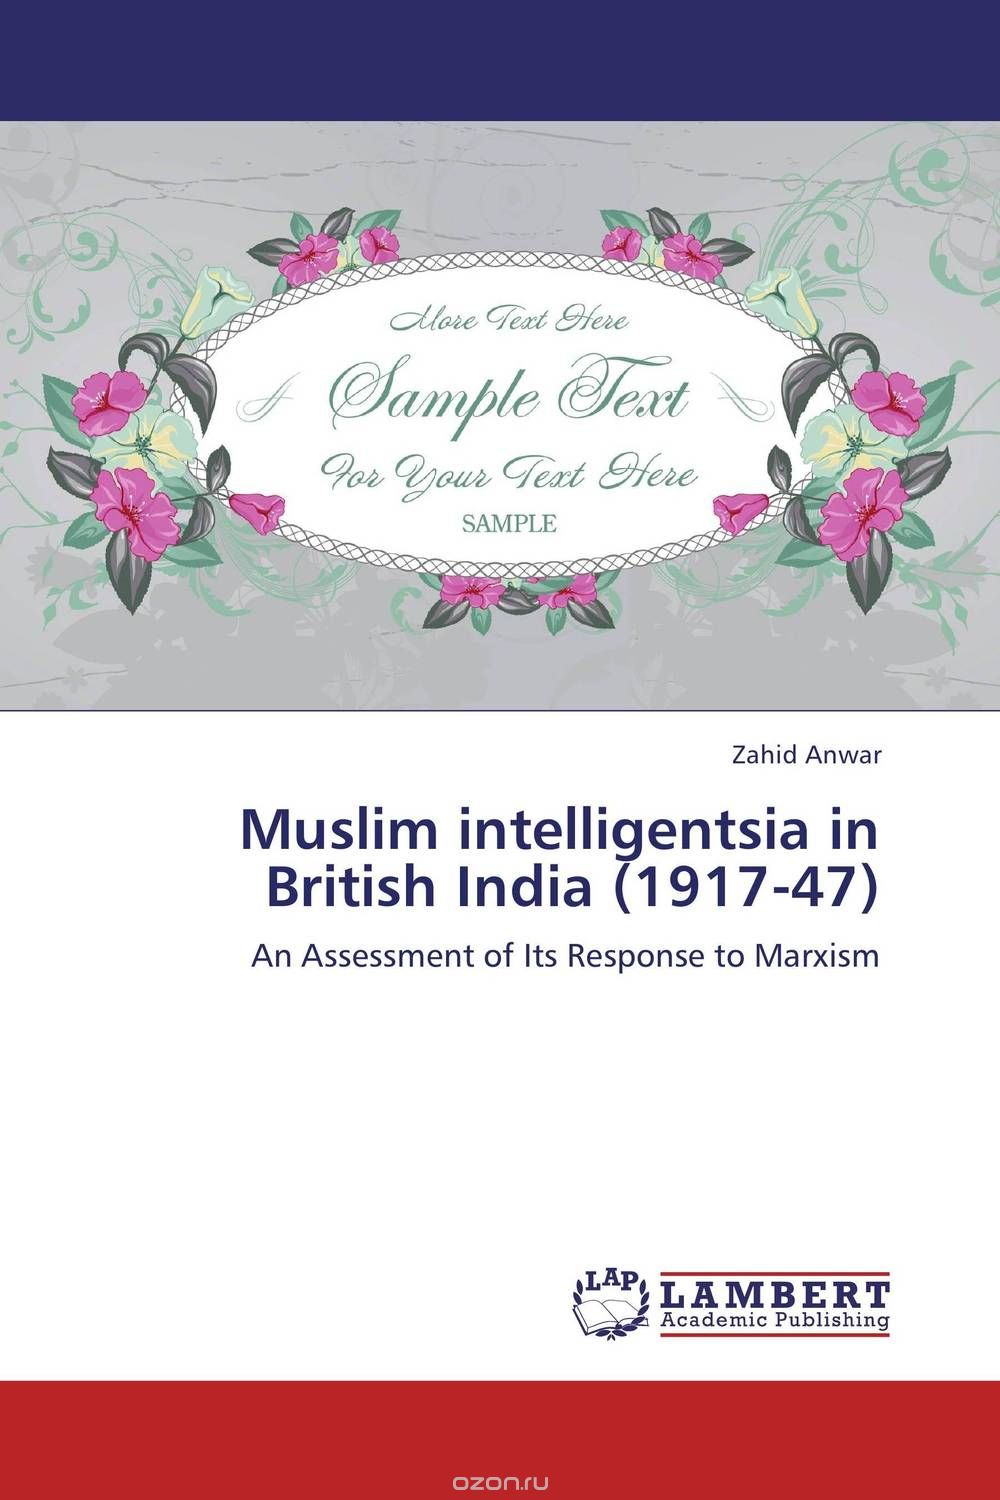 Muslim intelligentsia in British India (1917-47)